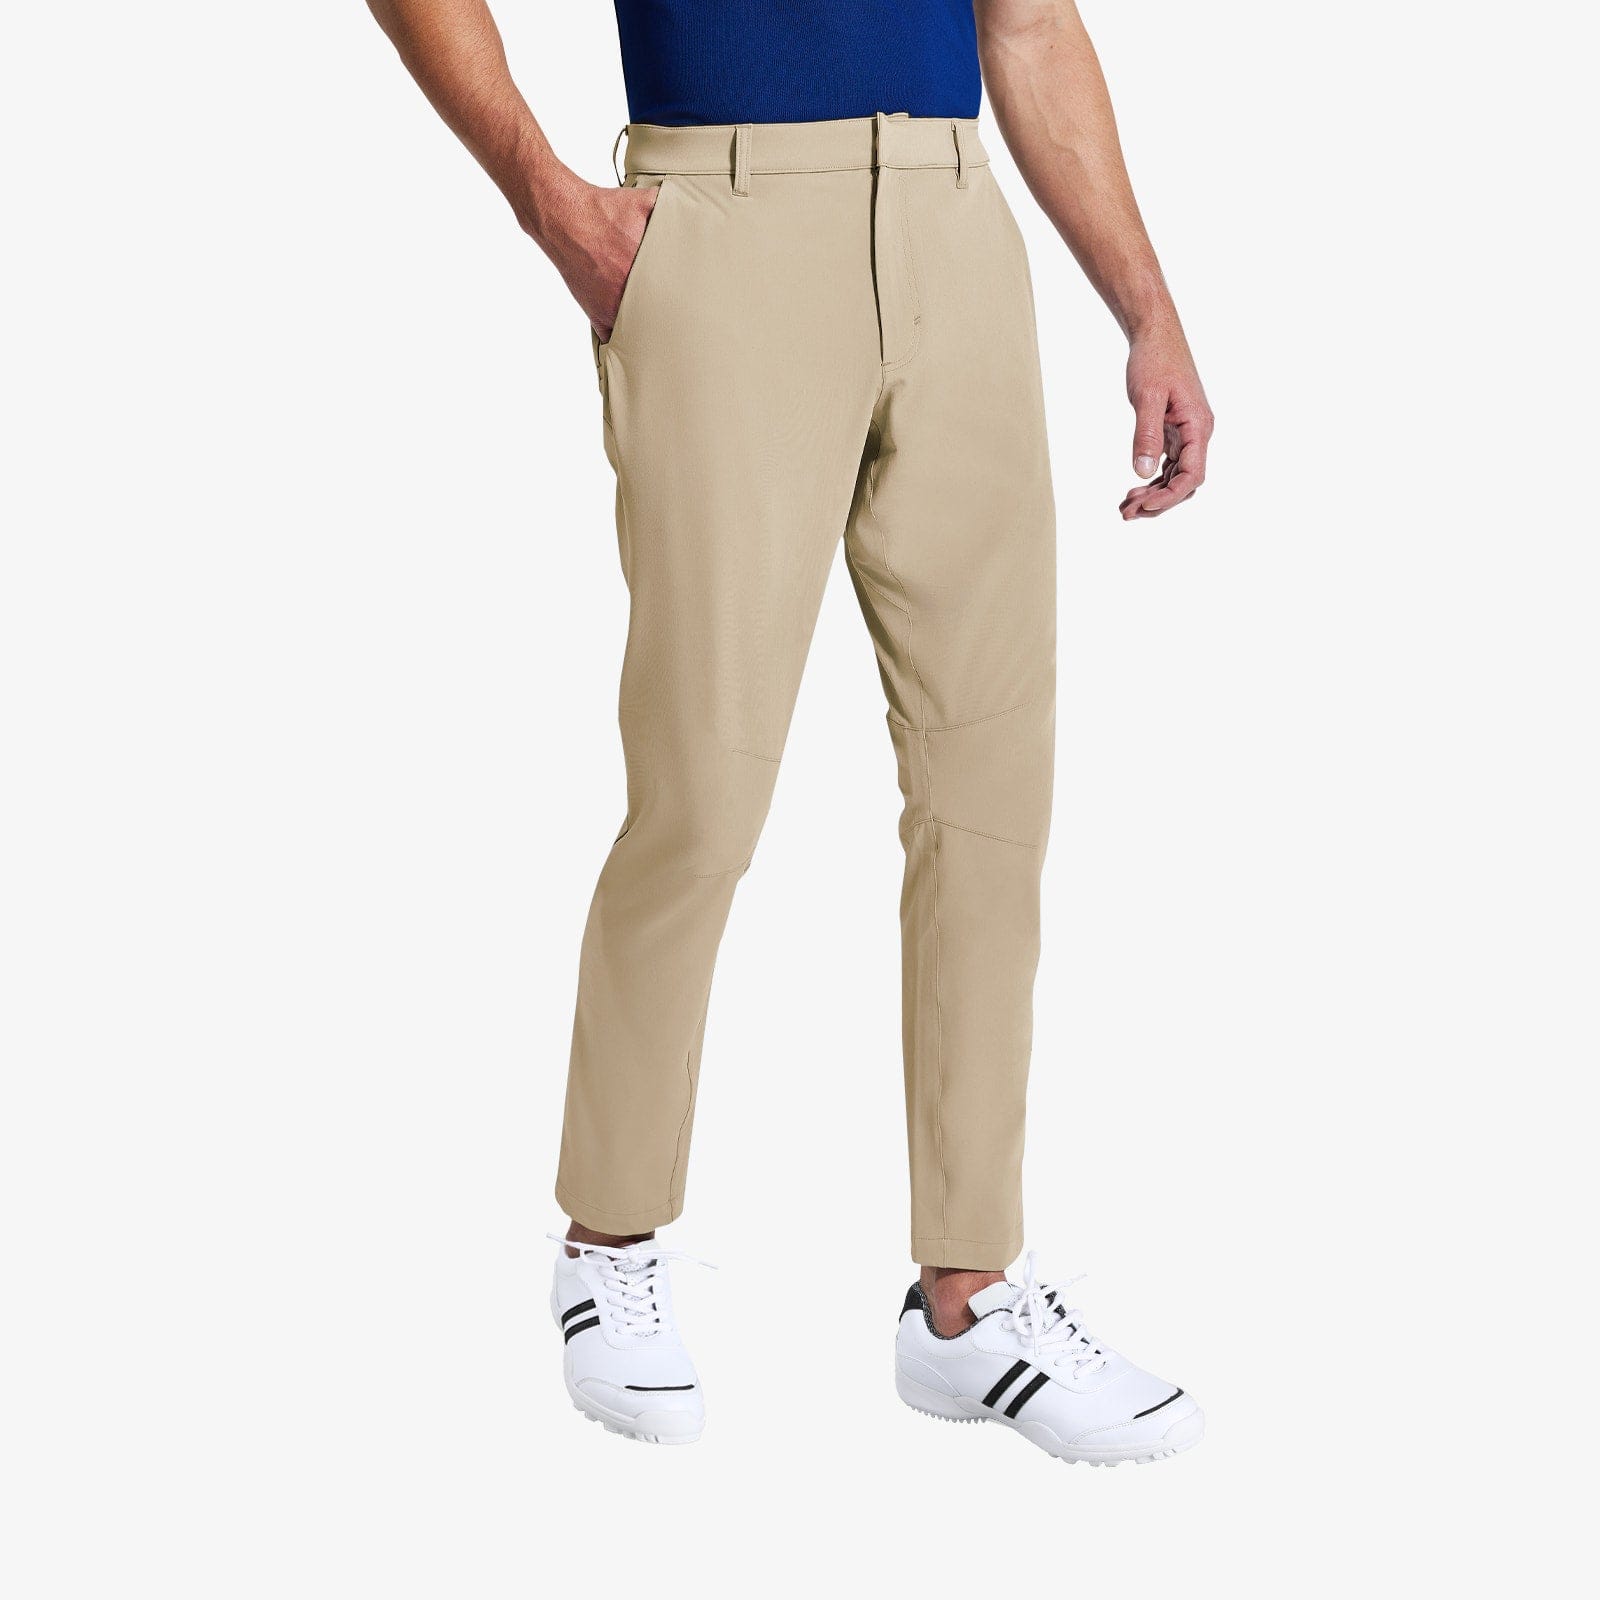 Men's Stretch Golf Pants Slim Fit Quick Dry Pants Men Train Pants Light Khaki / S MIER